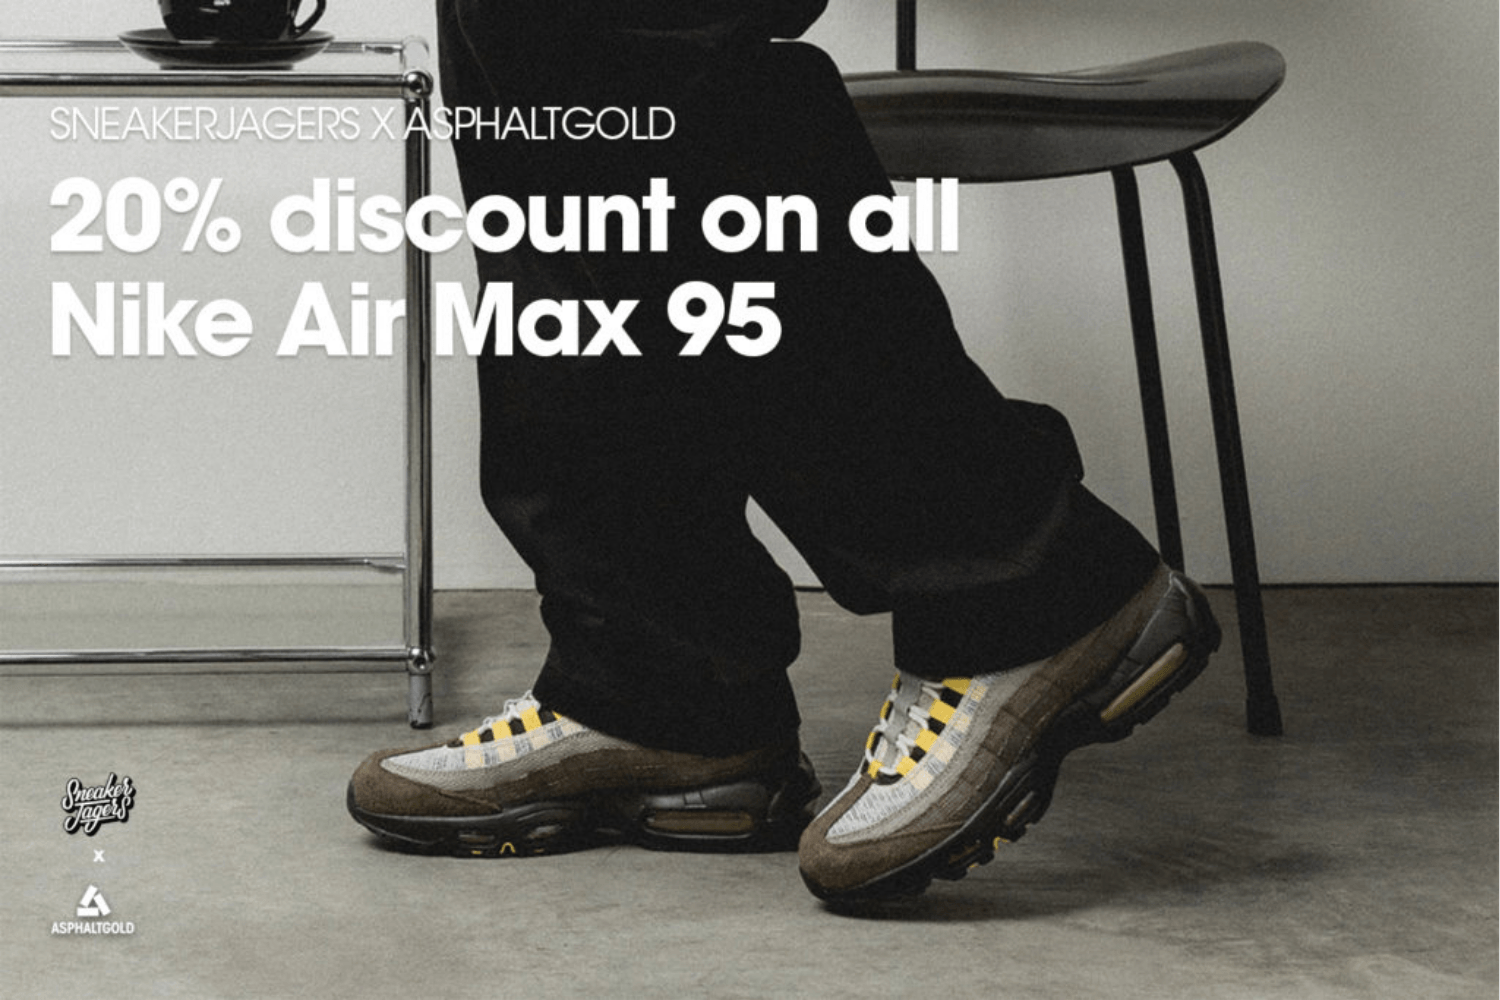 Sneakerjagers x Asphaltgold präsentieren Rabatt auf ALLE Air Max 95